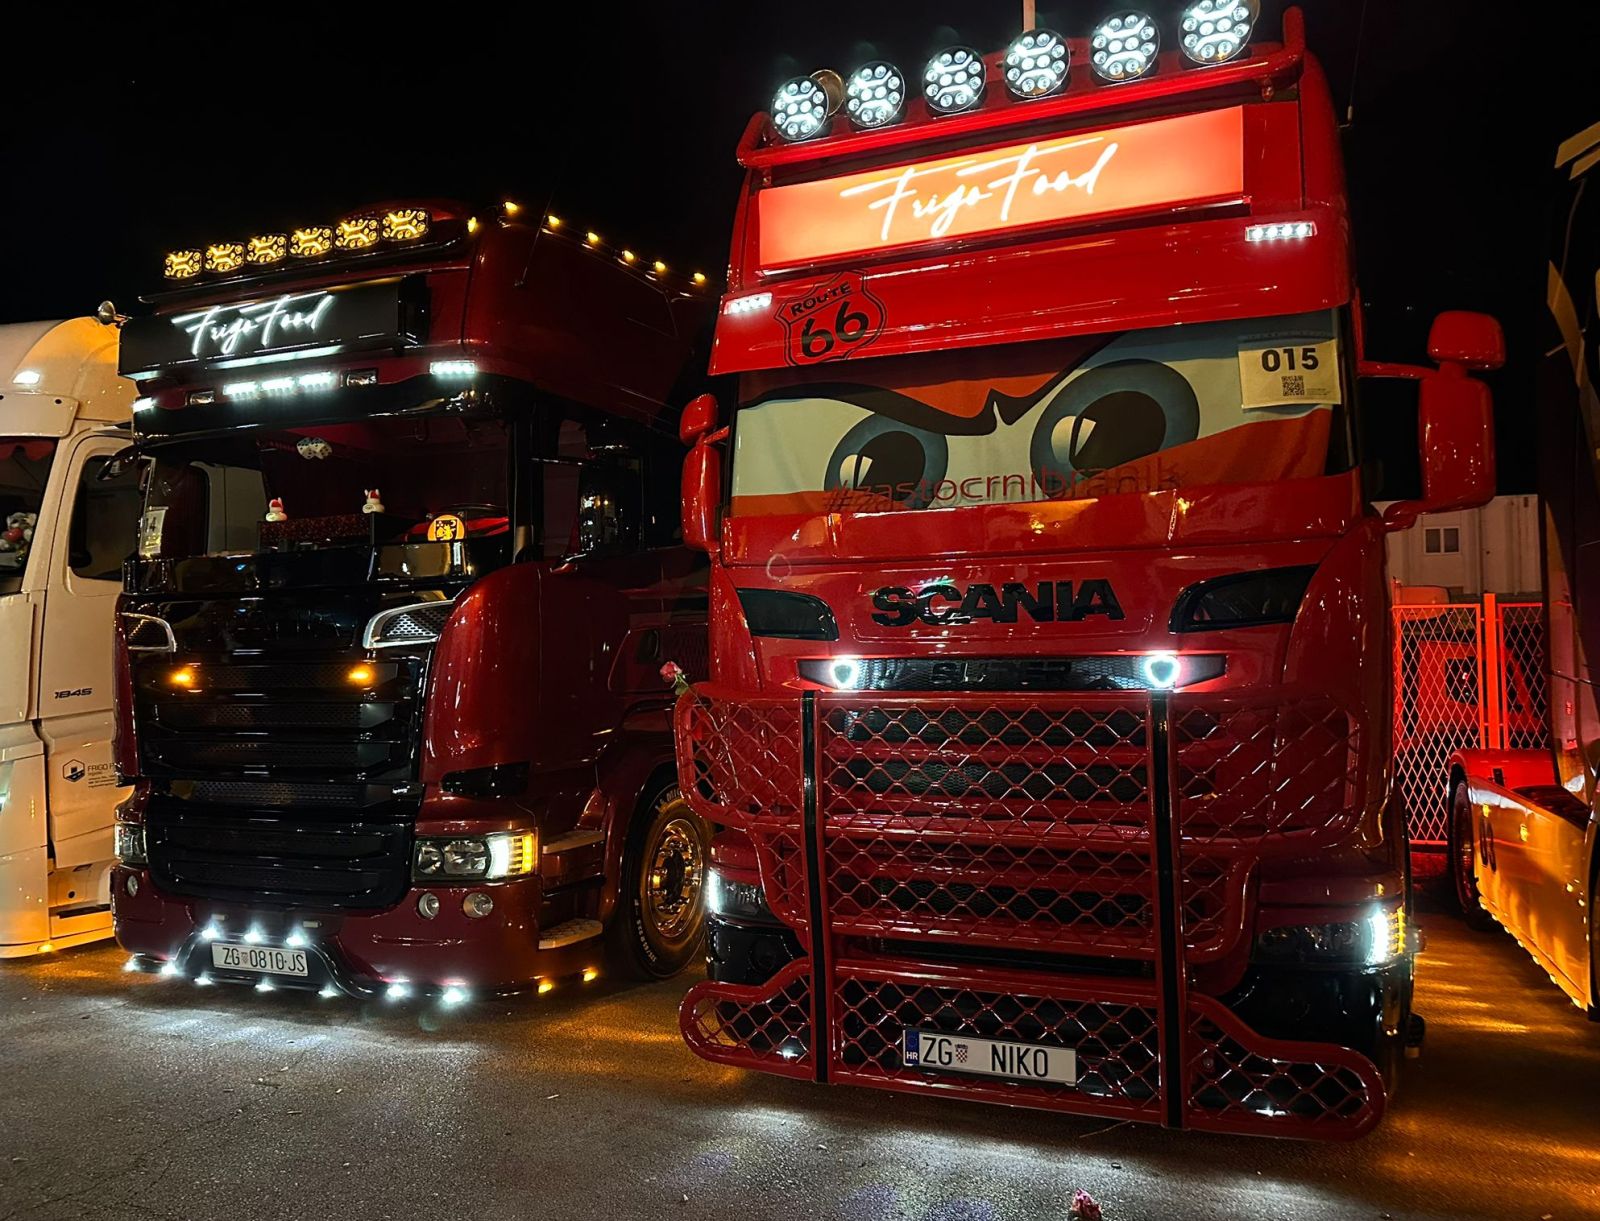 Truck show Dalmacija održan u nevjerojatnoj atmosferi uz glavno pitanje - kad će opet!? 1